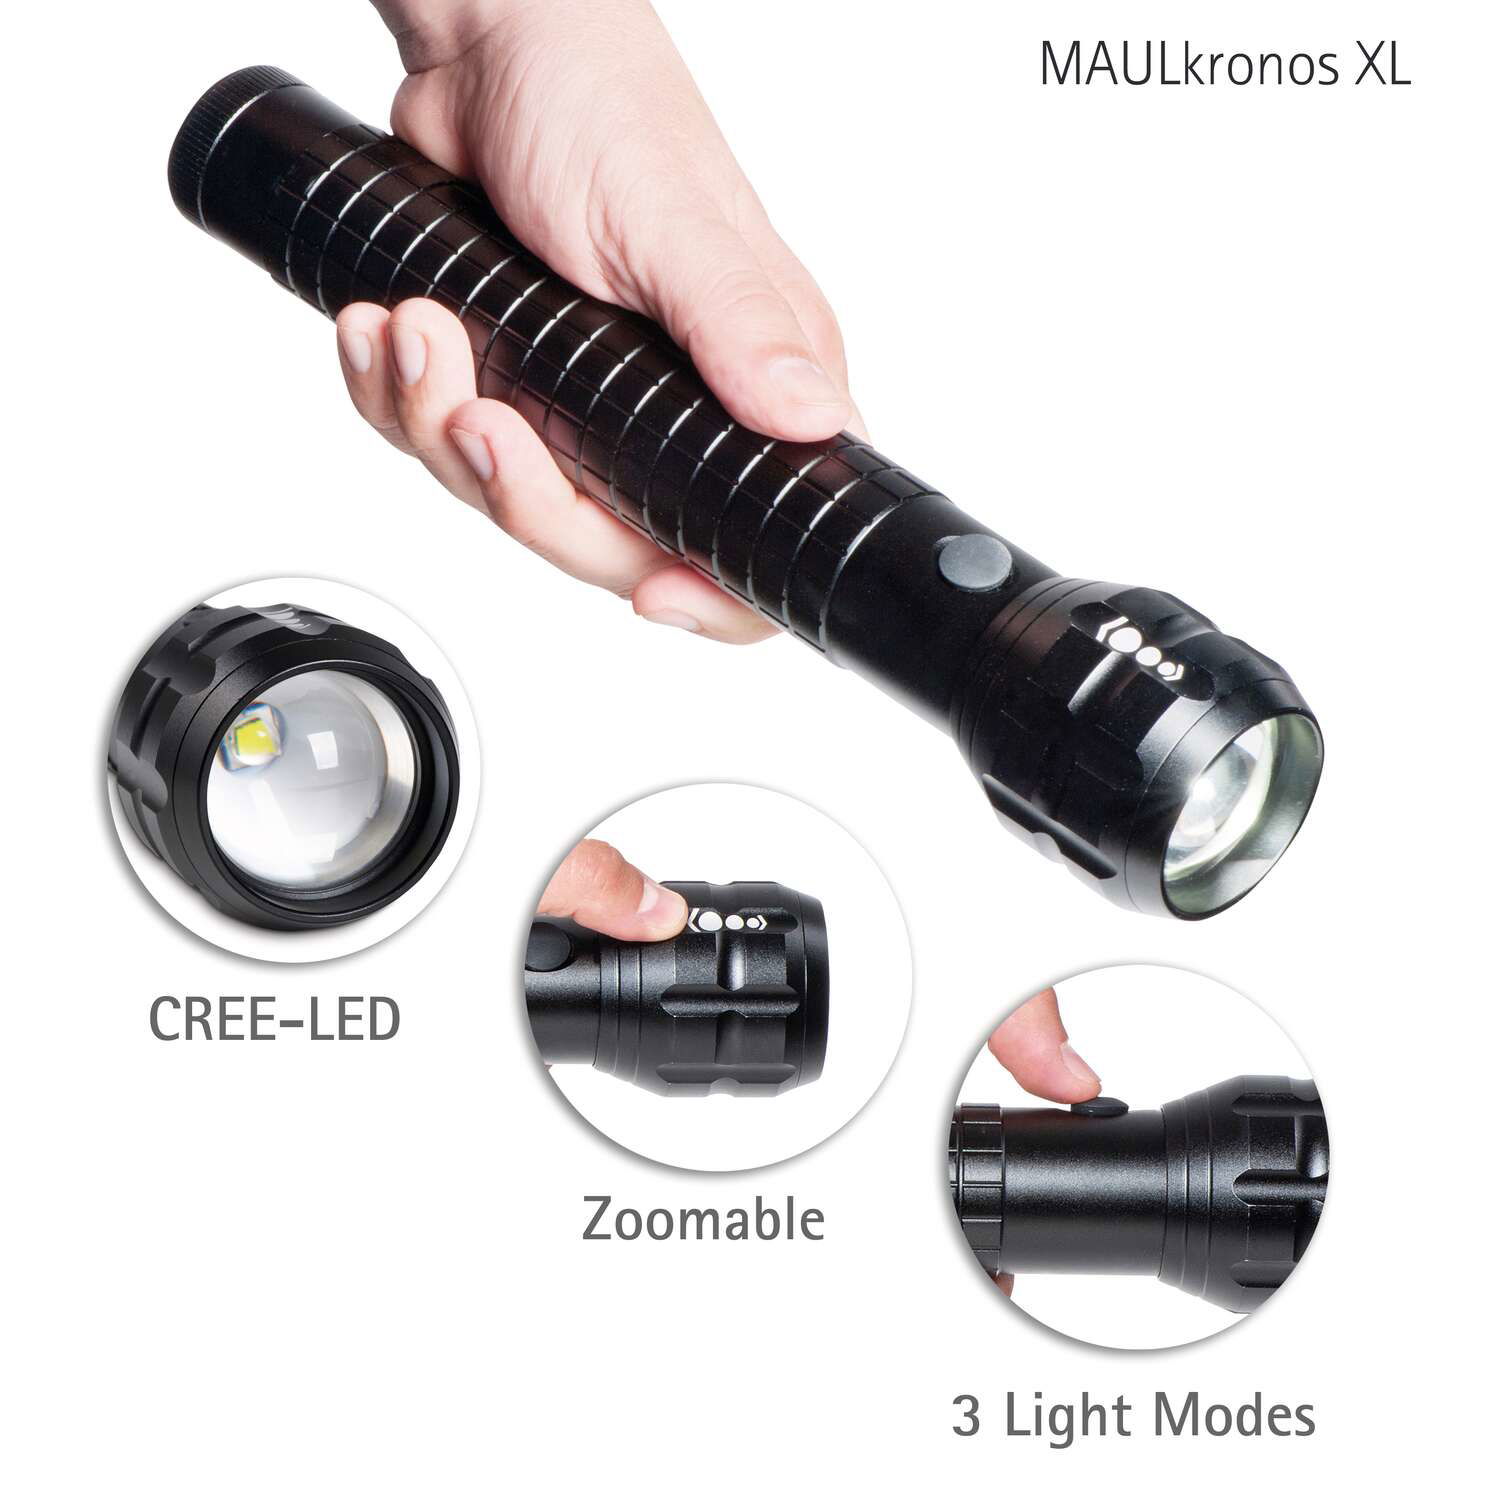 LED-Taschenlampe MAULkronos XL 28,7 cm, 10 W, bis zu 295 m